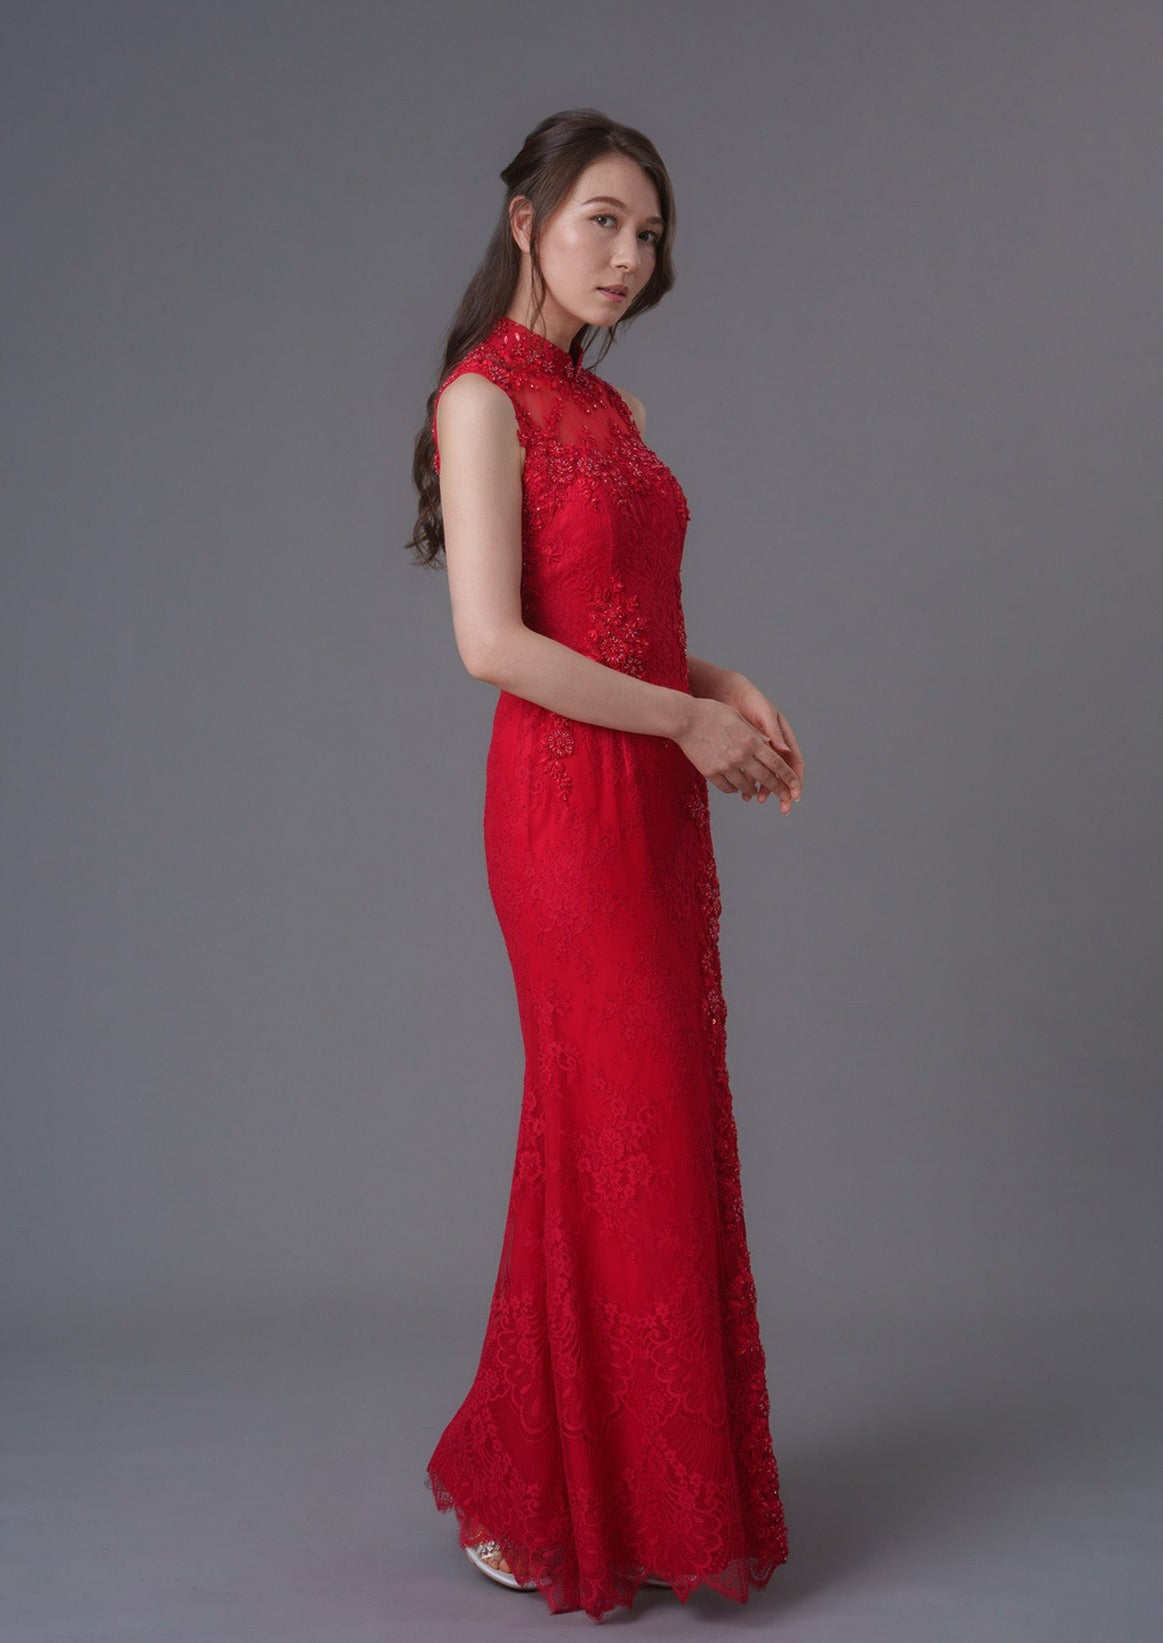 Hyacinth Hues Bridal Qipao Gown